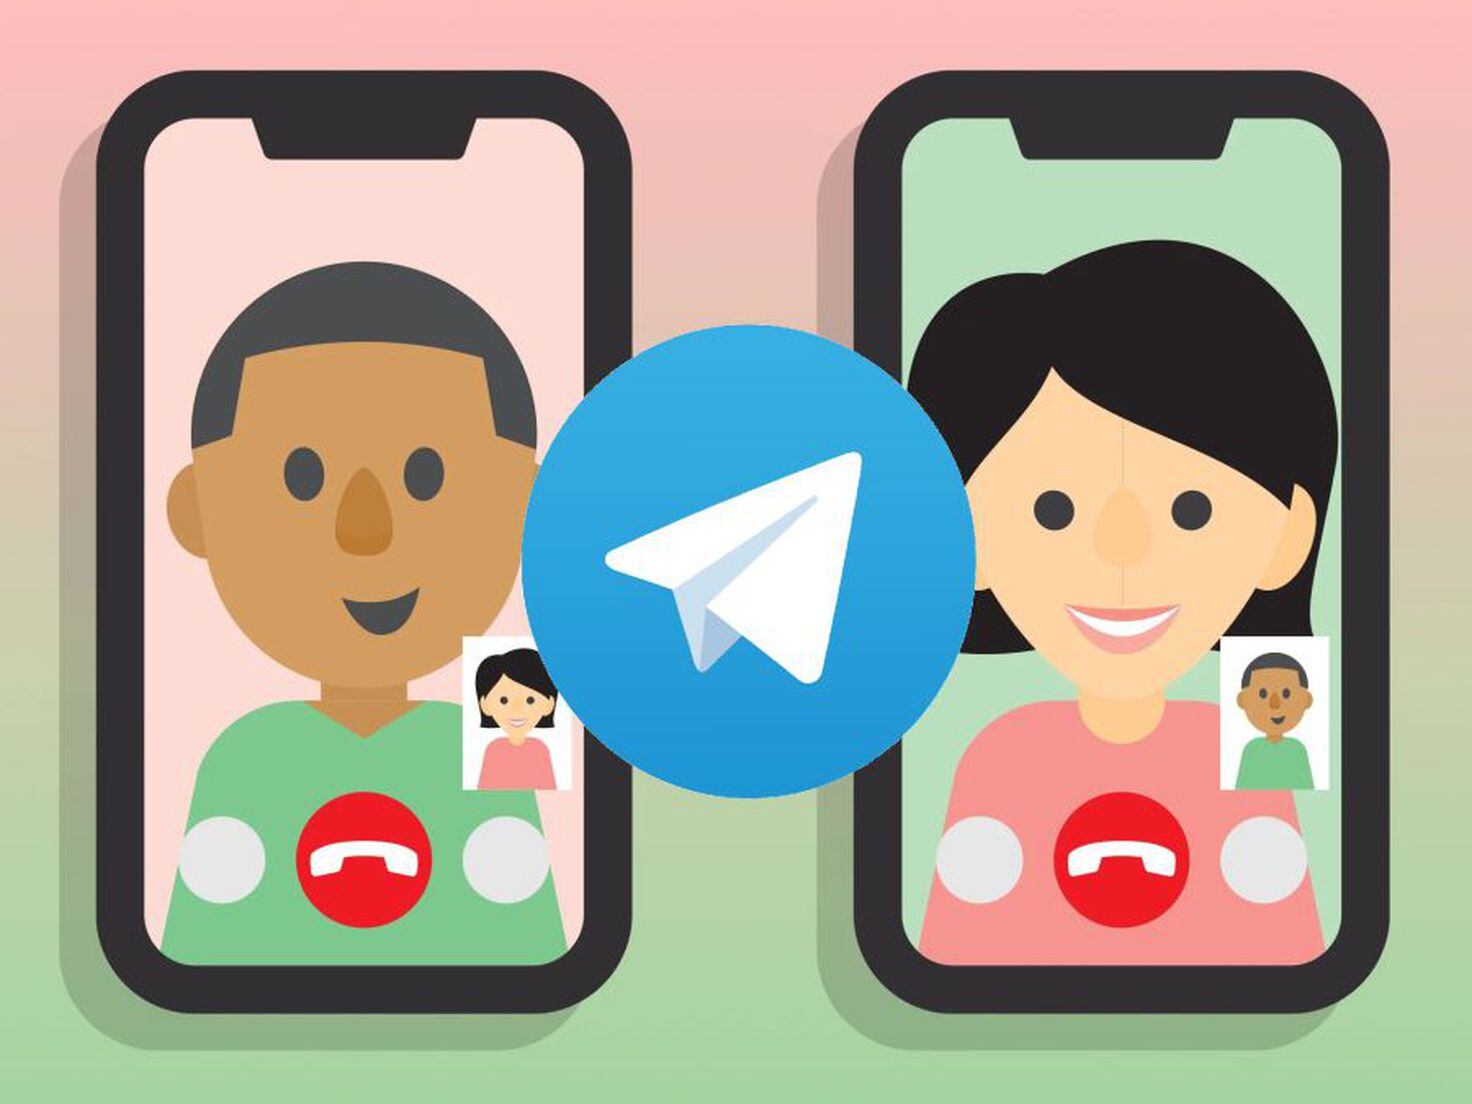 Telegram: ¿cómo crear un meme en segundos y enviarlo a tus amigos?, Tecnología